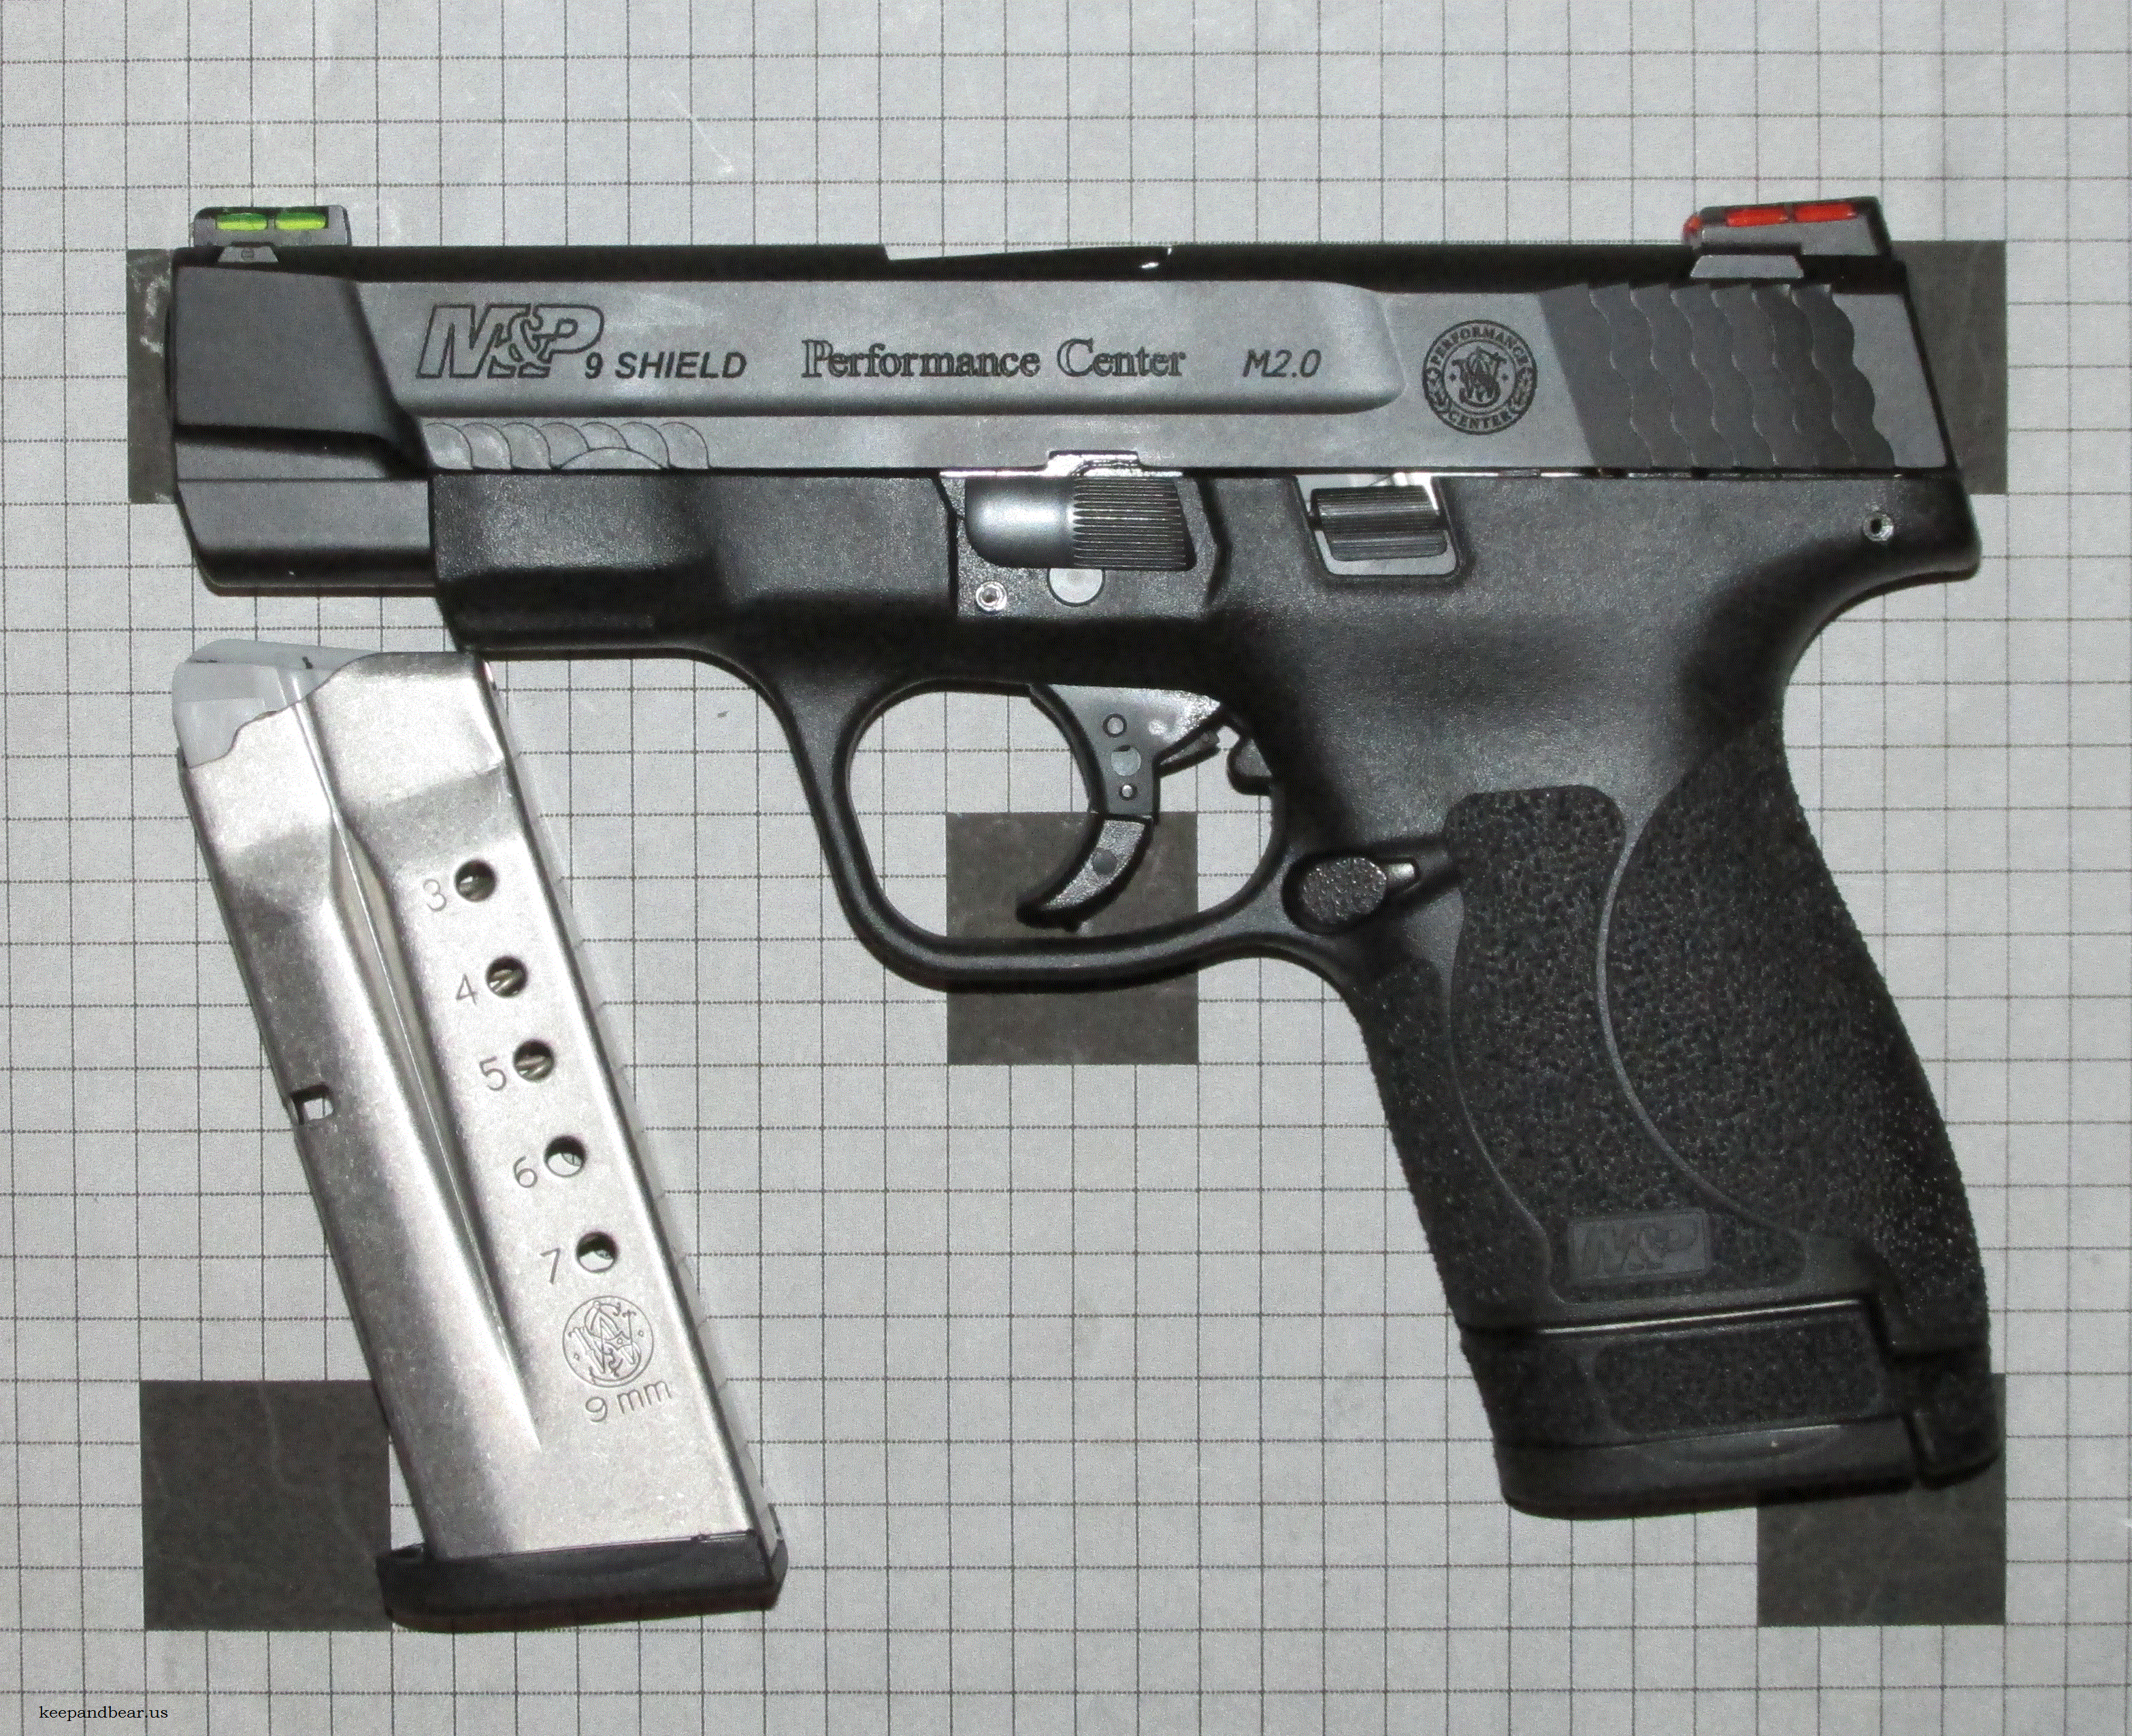 Smith & Wesson M&P 9 SHIELD PC M2.0 